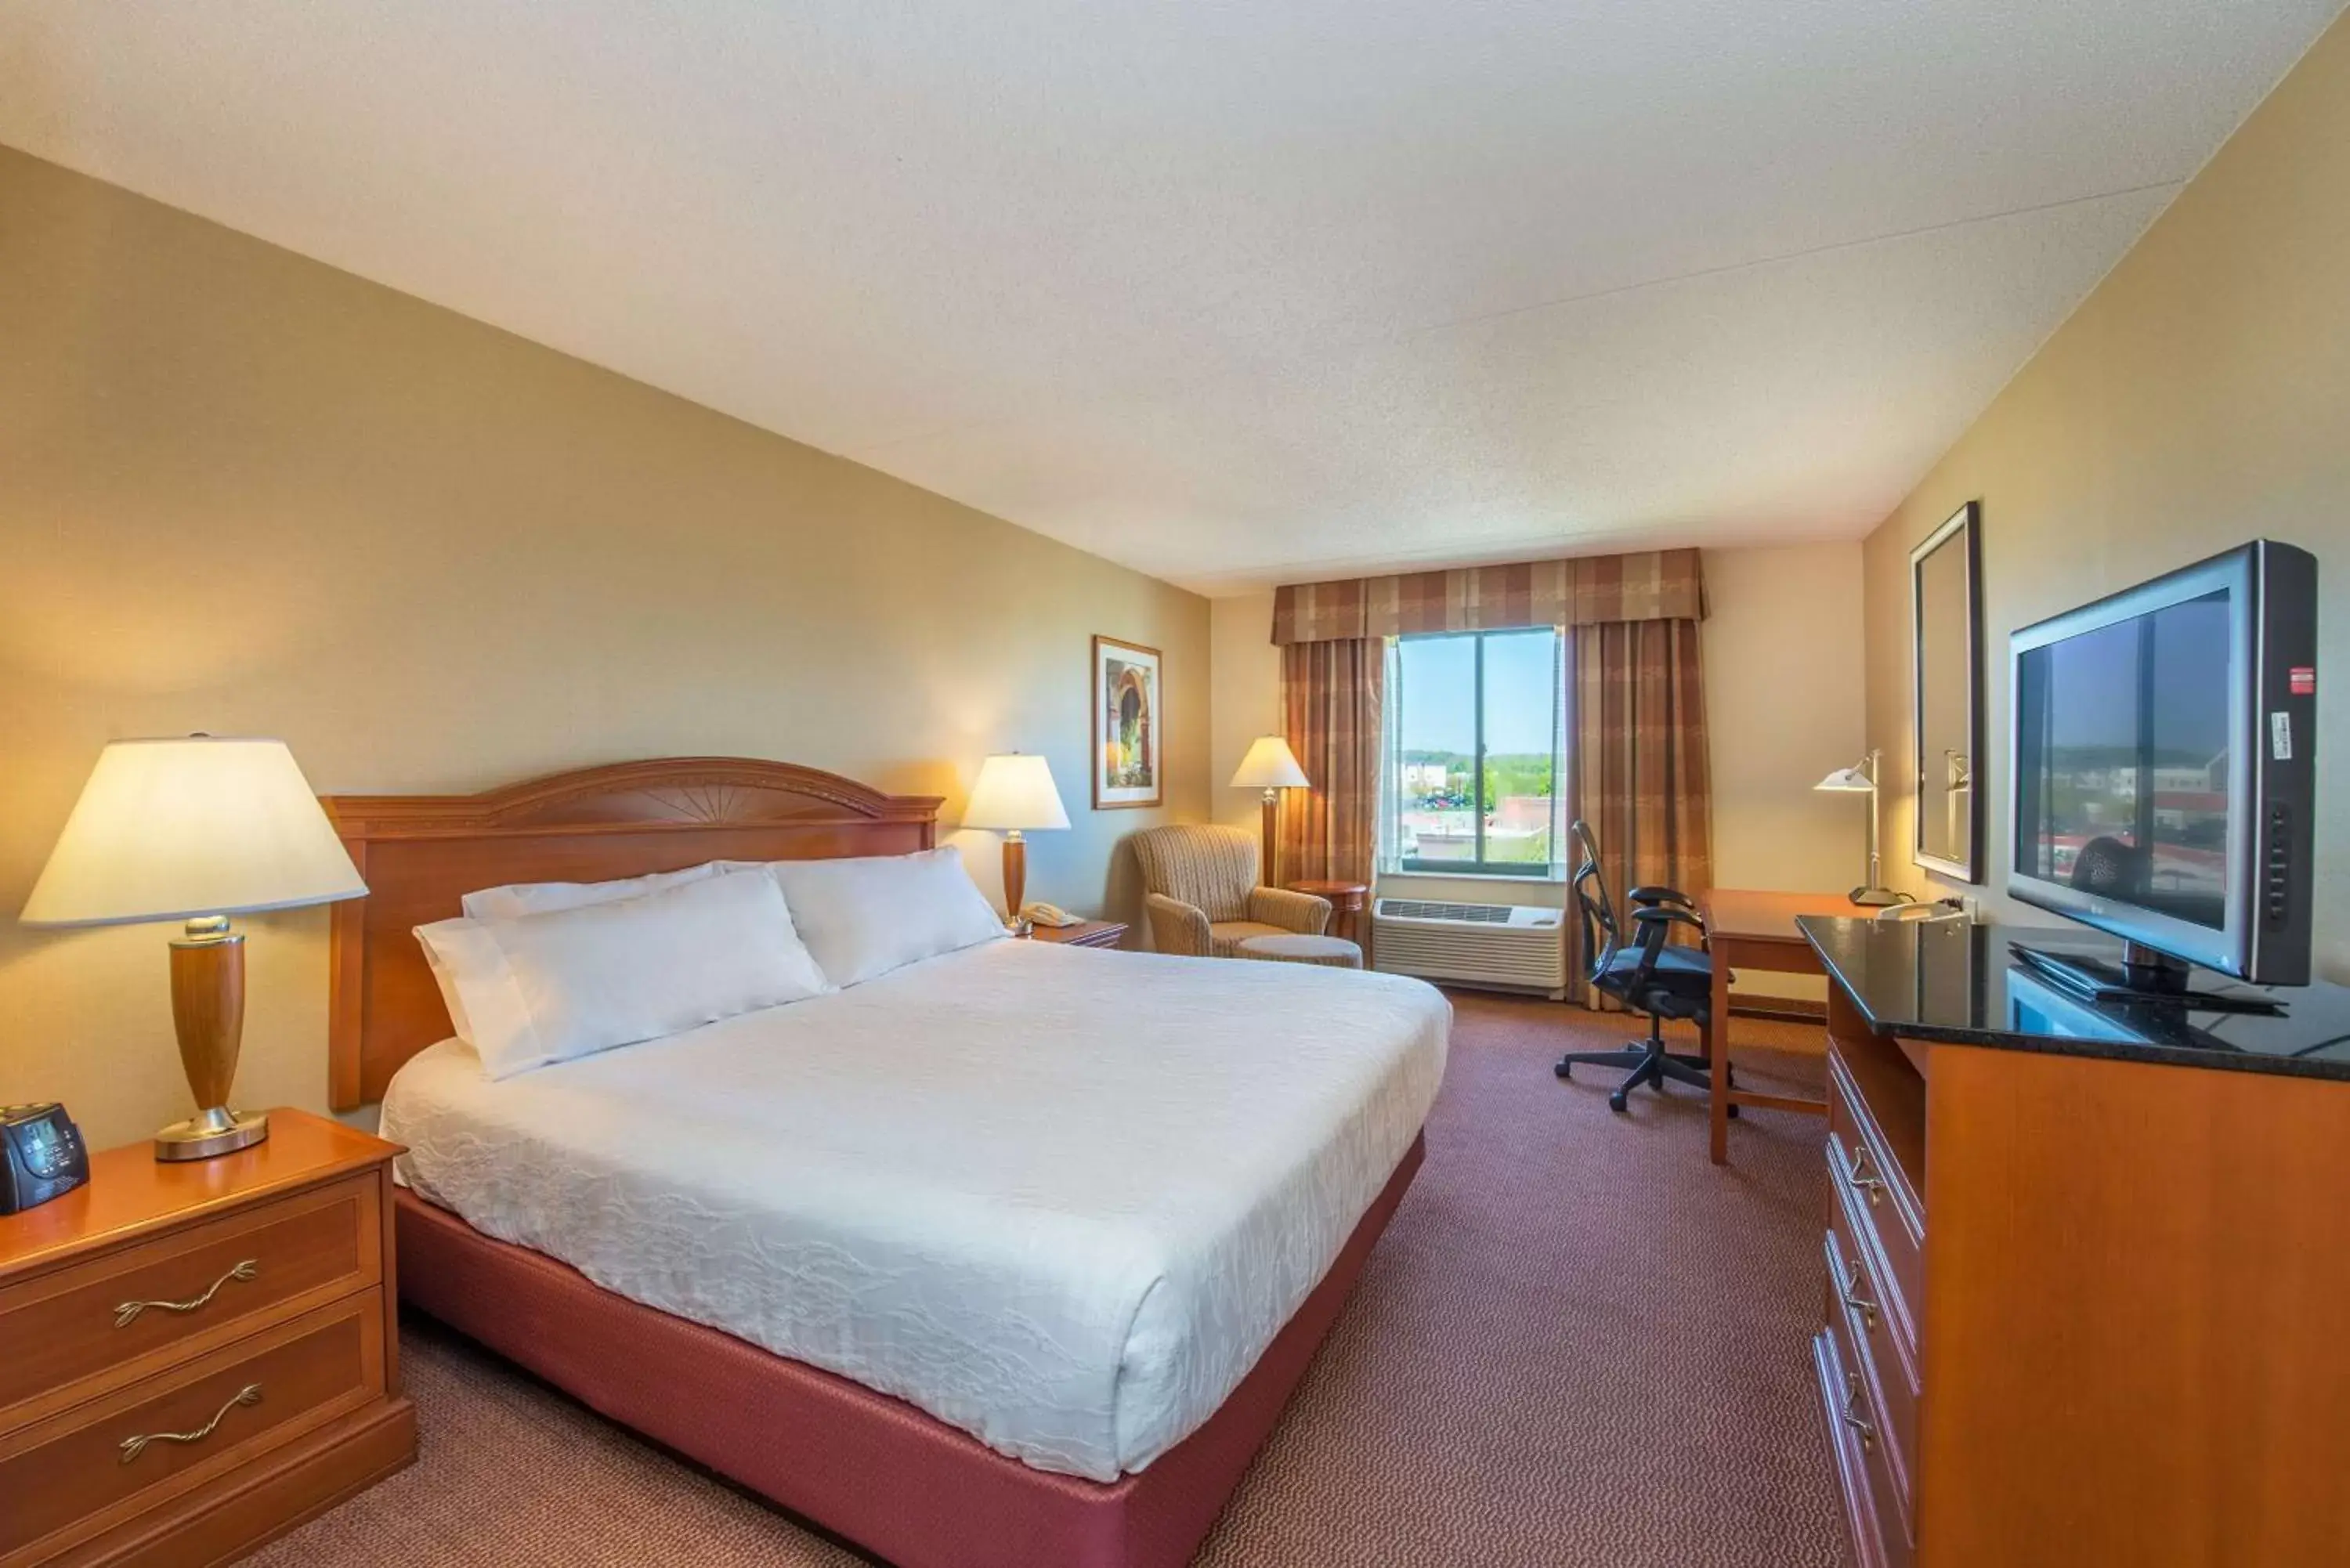 Bedroom in Hilton Garden Inn Poughkeepsie/Fishkill